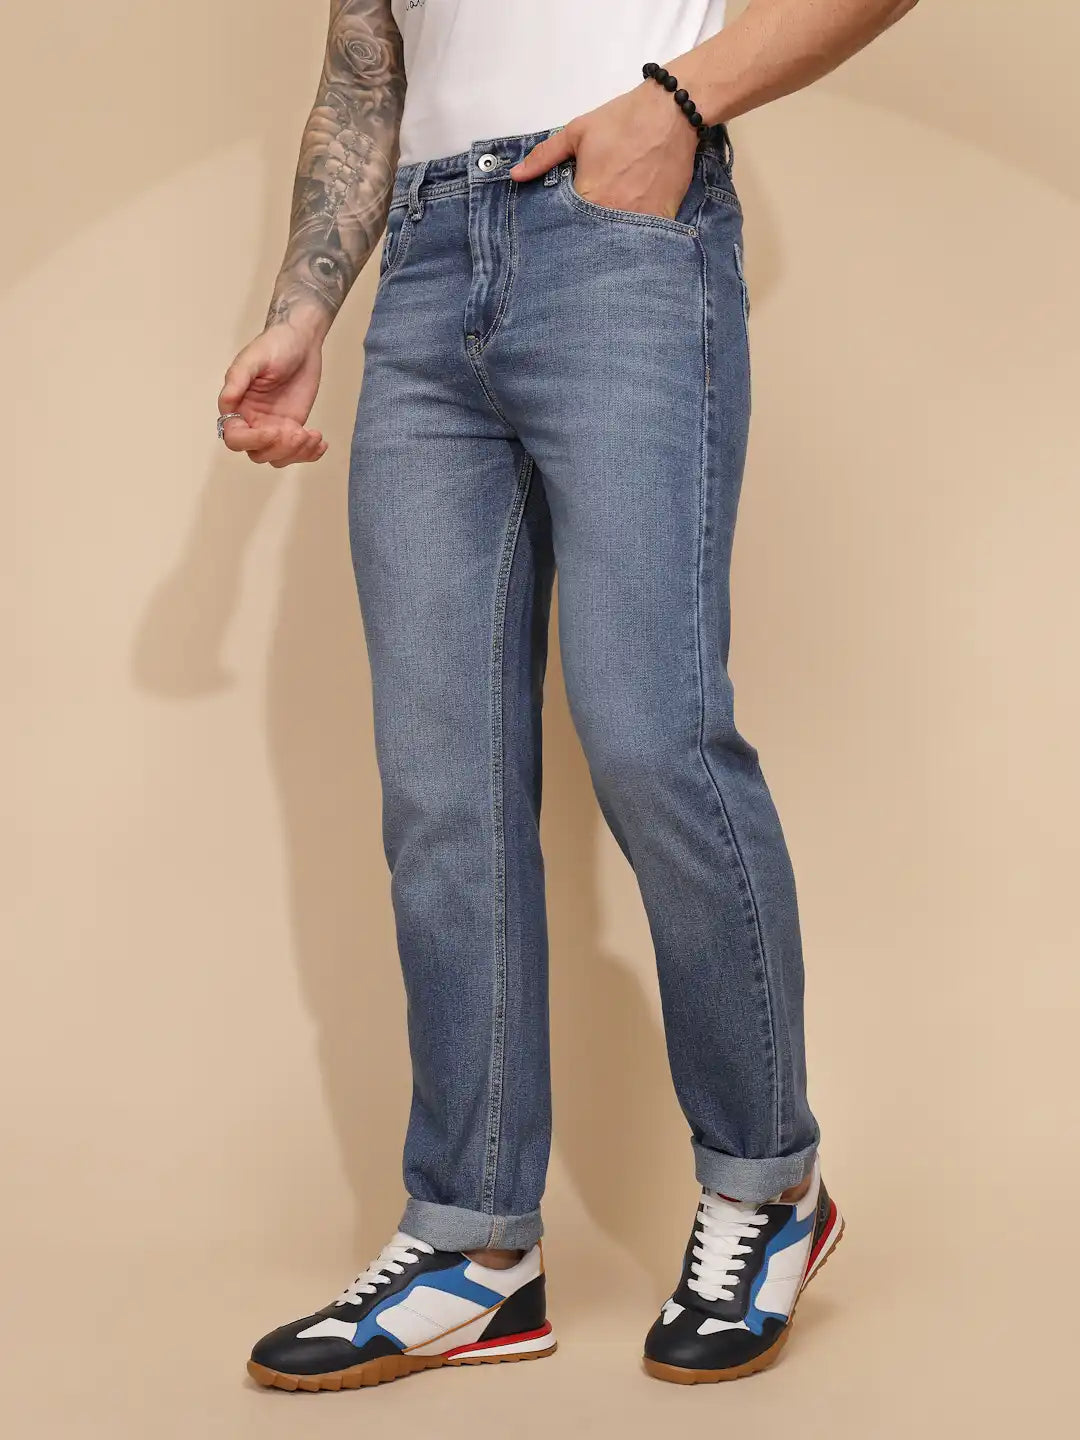 Blue Cotton Slim Fit Jeans For Men